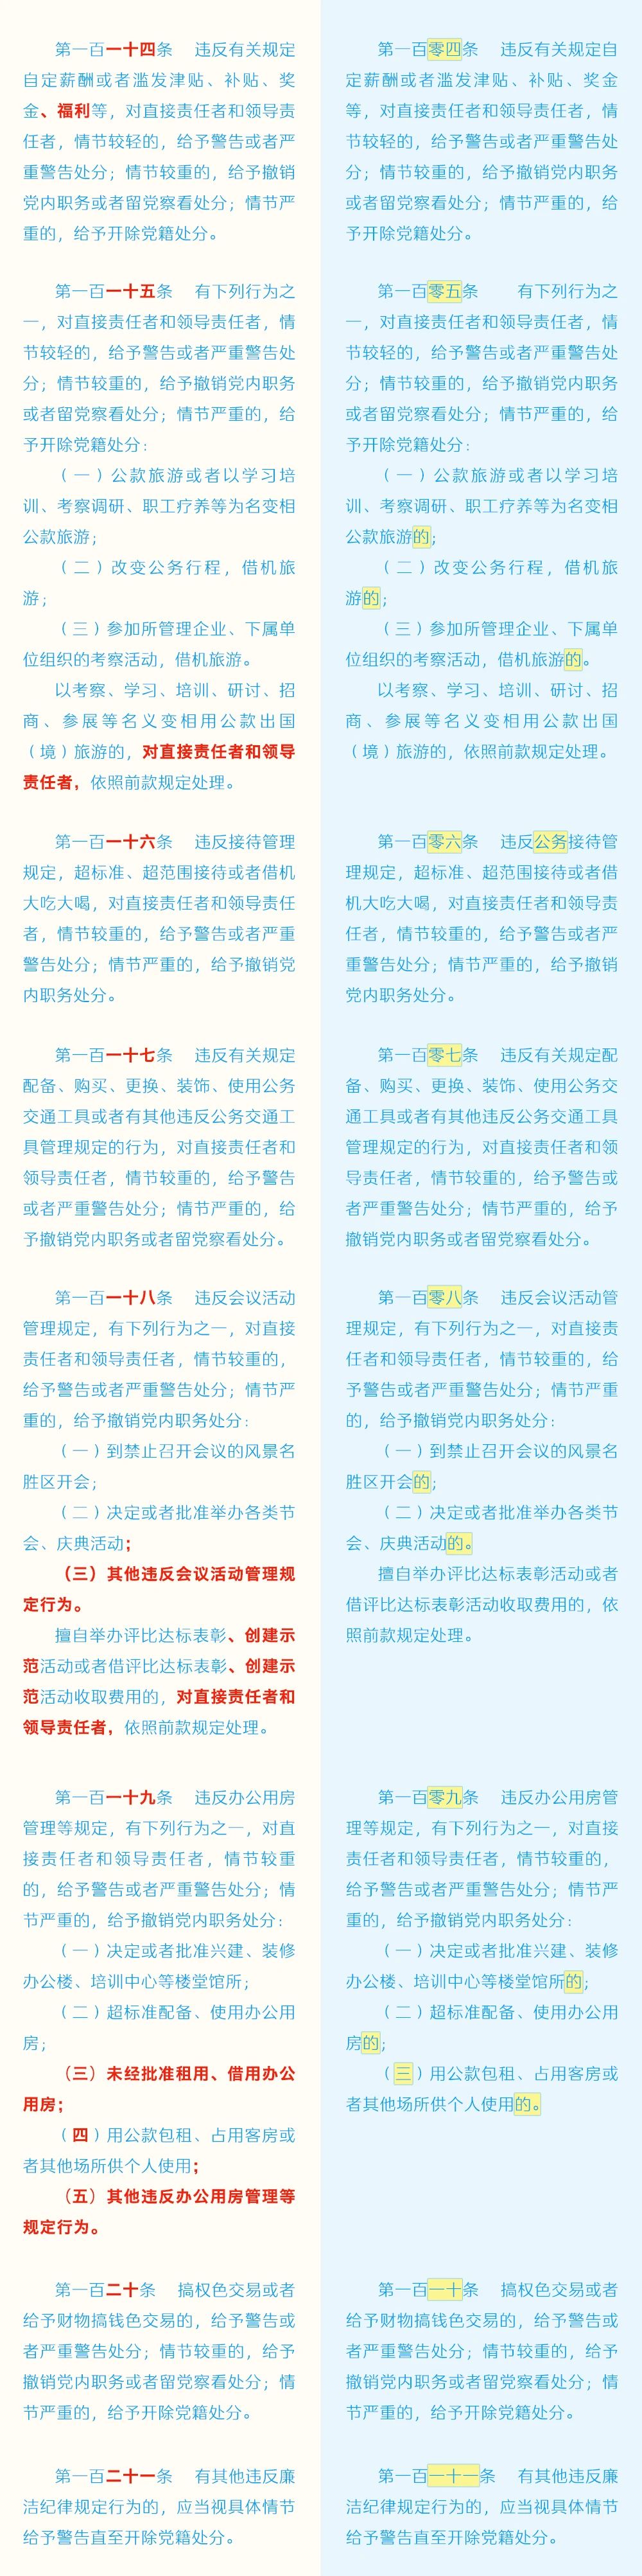 《中国共产党纪律处分条例》修订条文对照表17.jpg